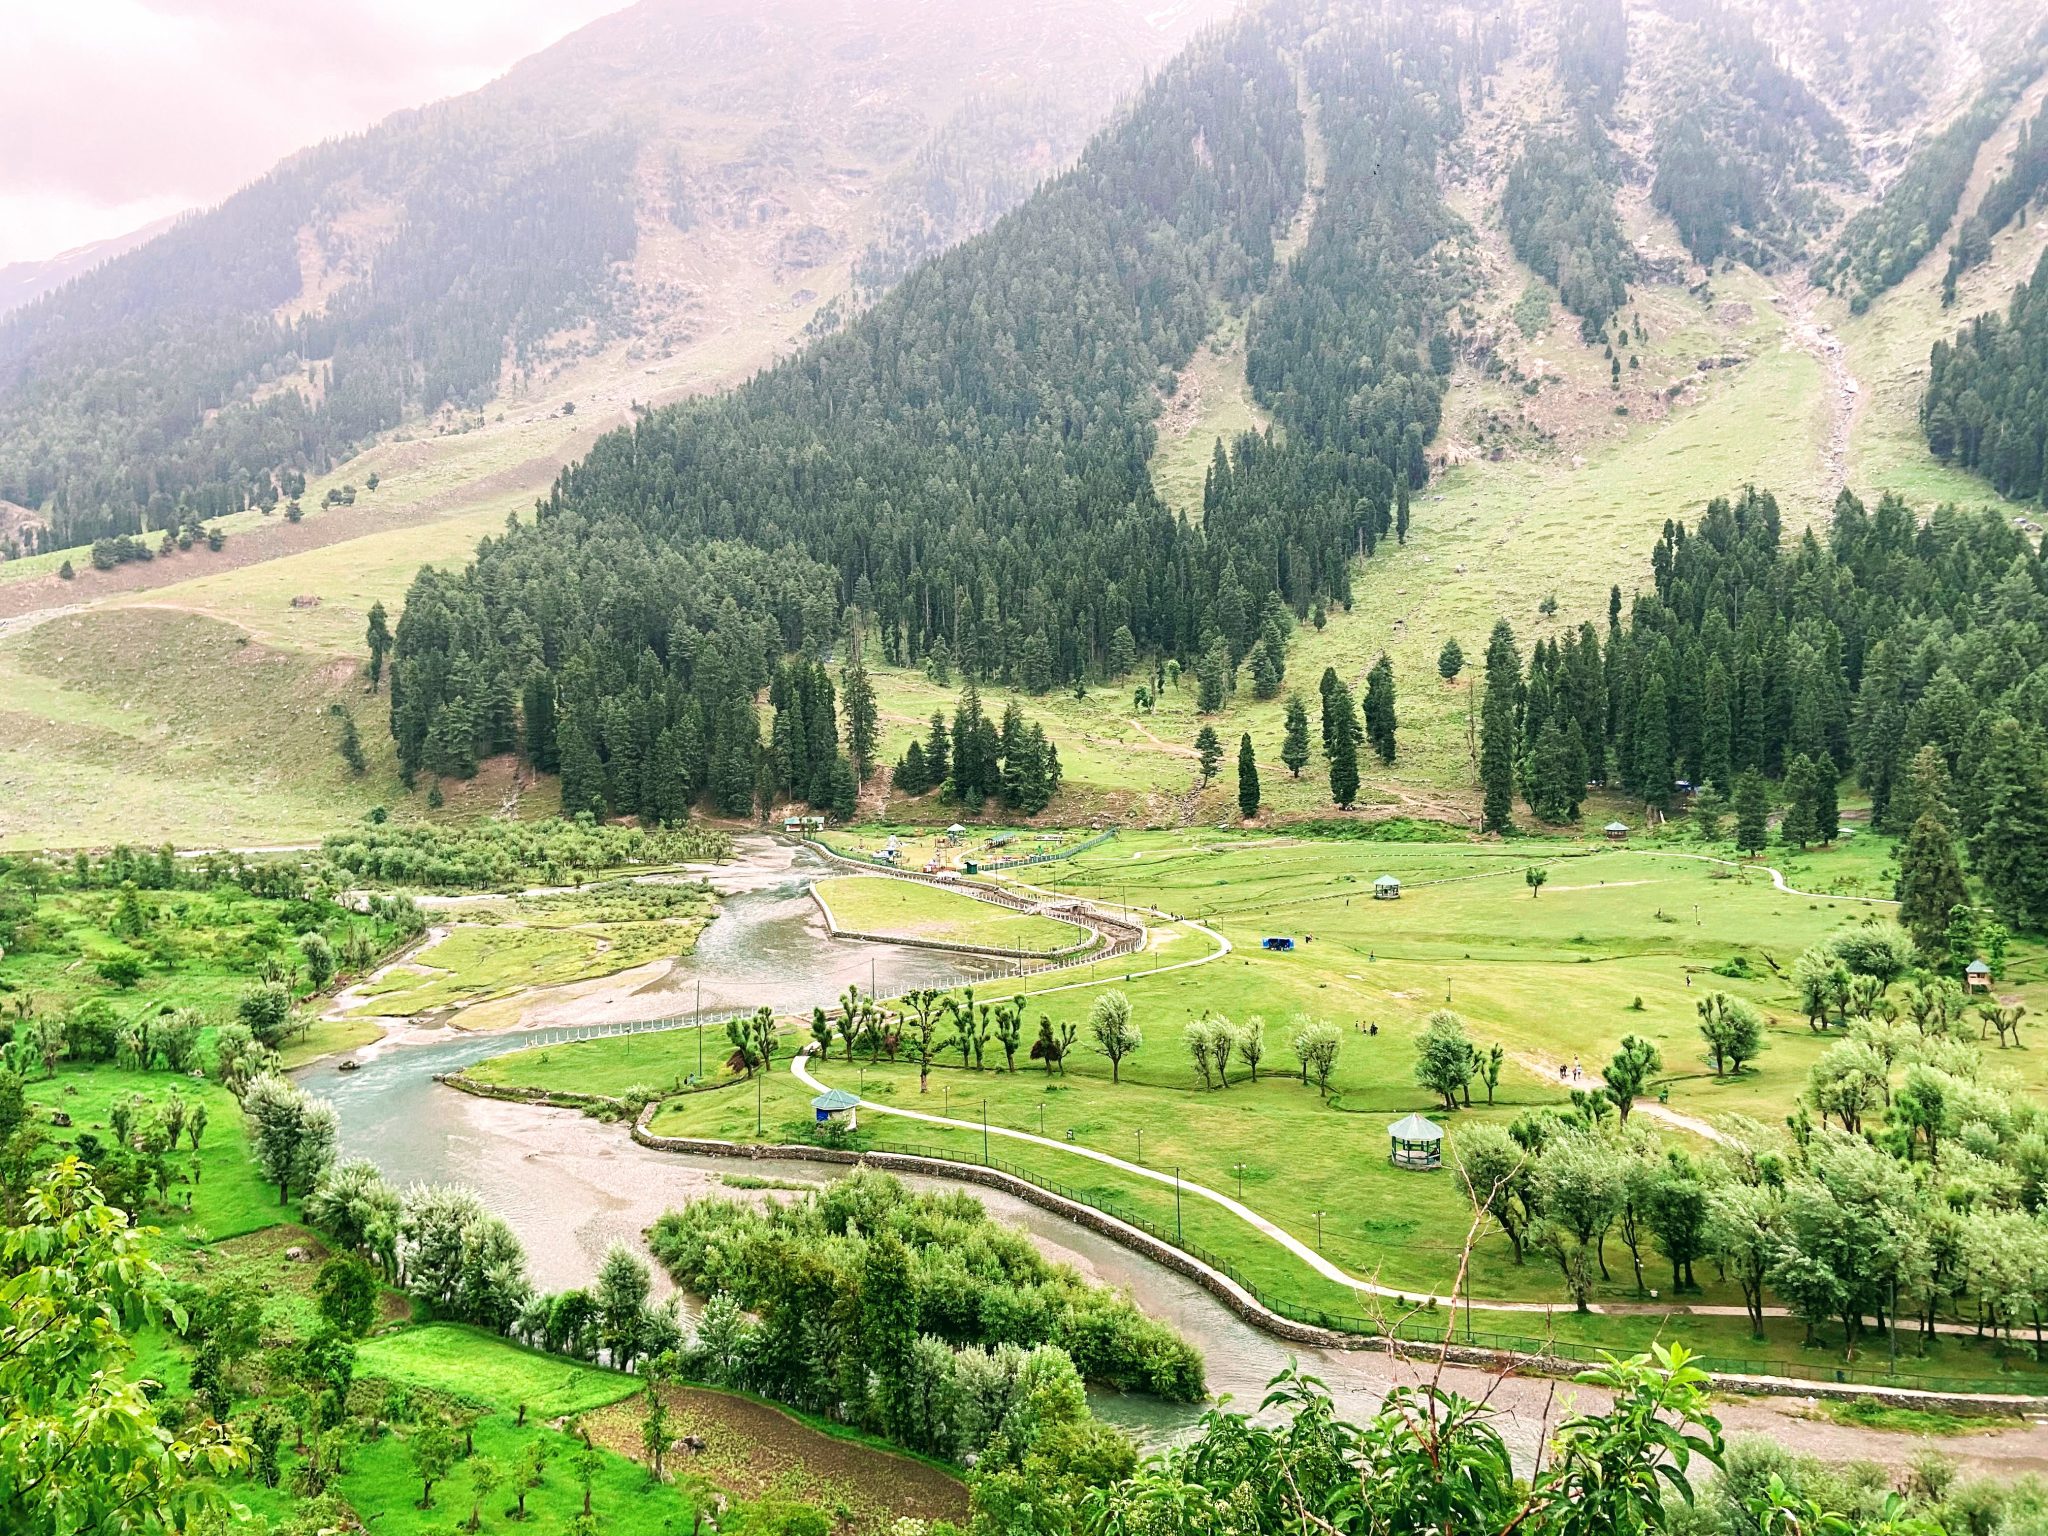 Betaab Valley, Pahalgam (Kashmir)